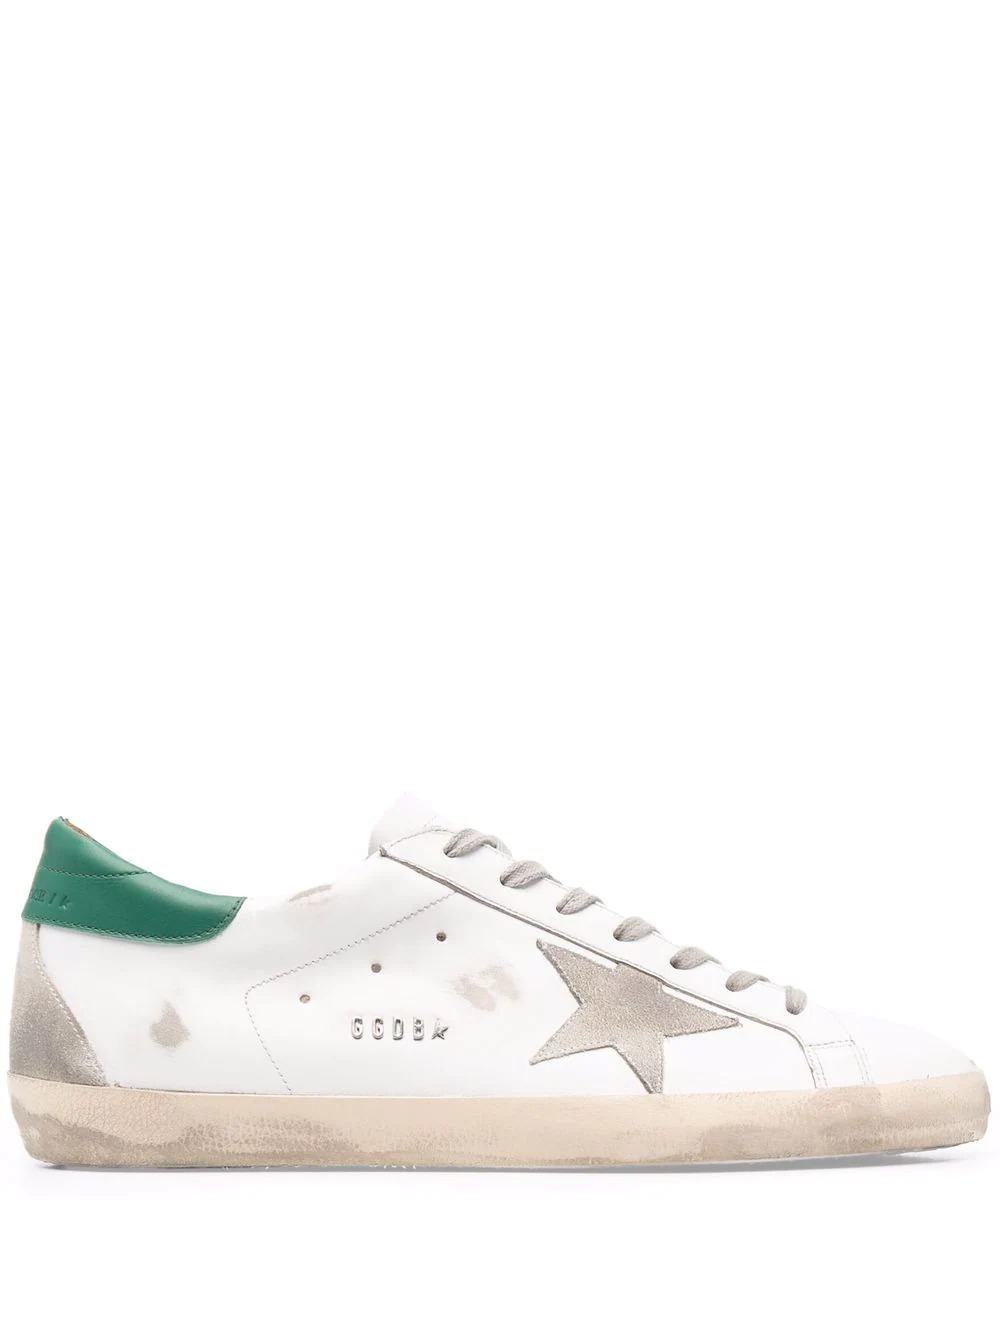 Weiße Superstar Sneaker mit grünem Heel 